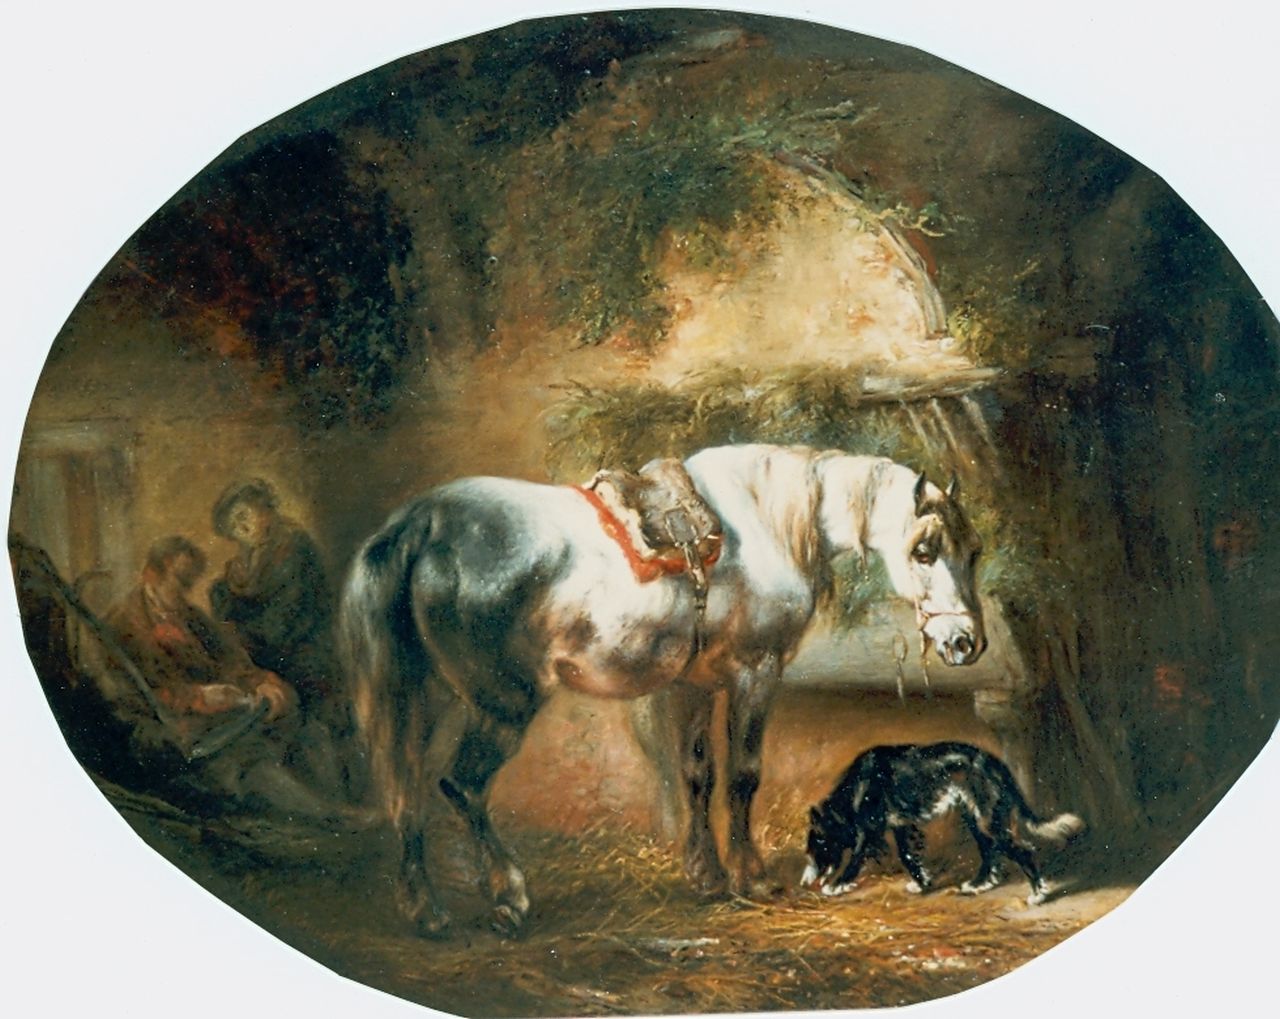 Verschuur W.  | Wouterus Verschuur, Paard en hond in stal, olieverf op paneel 30,6 x 39,0 cm, gesigneerd linksonder en gedateerd 1845